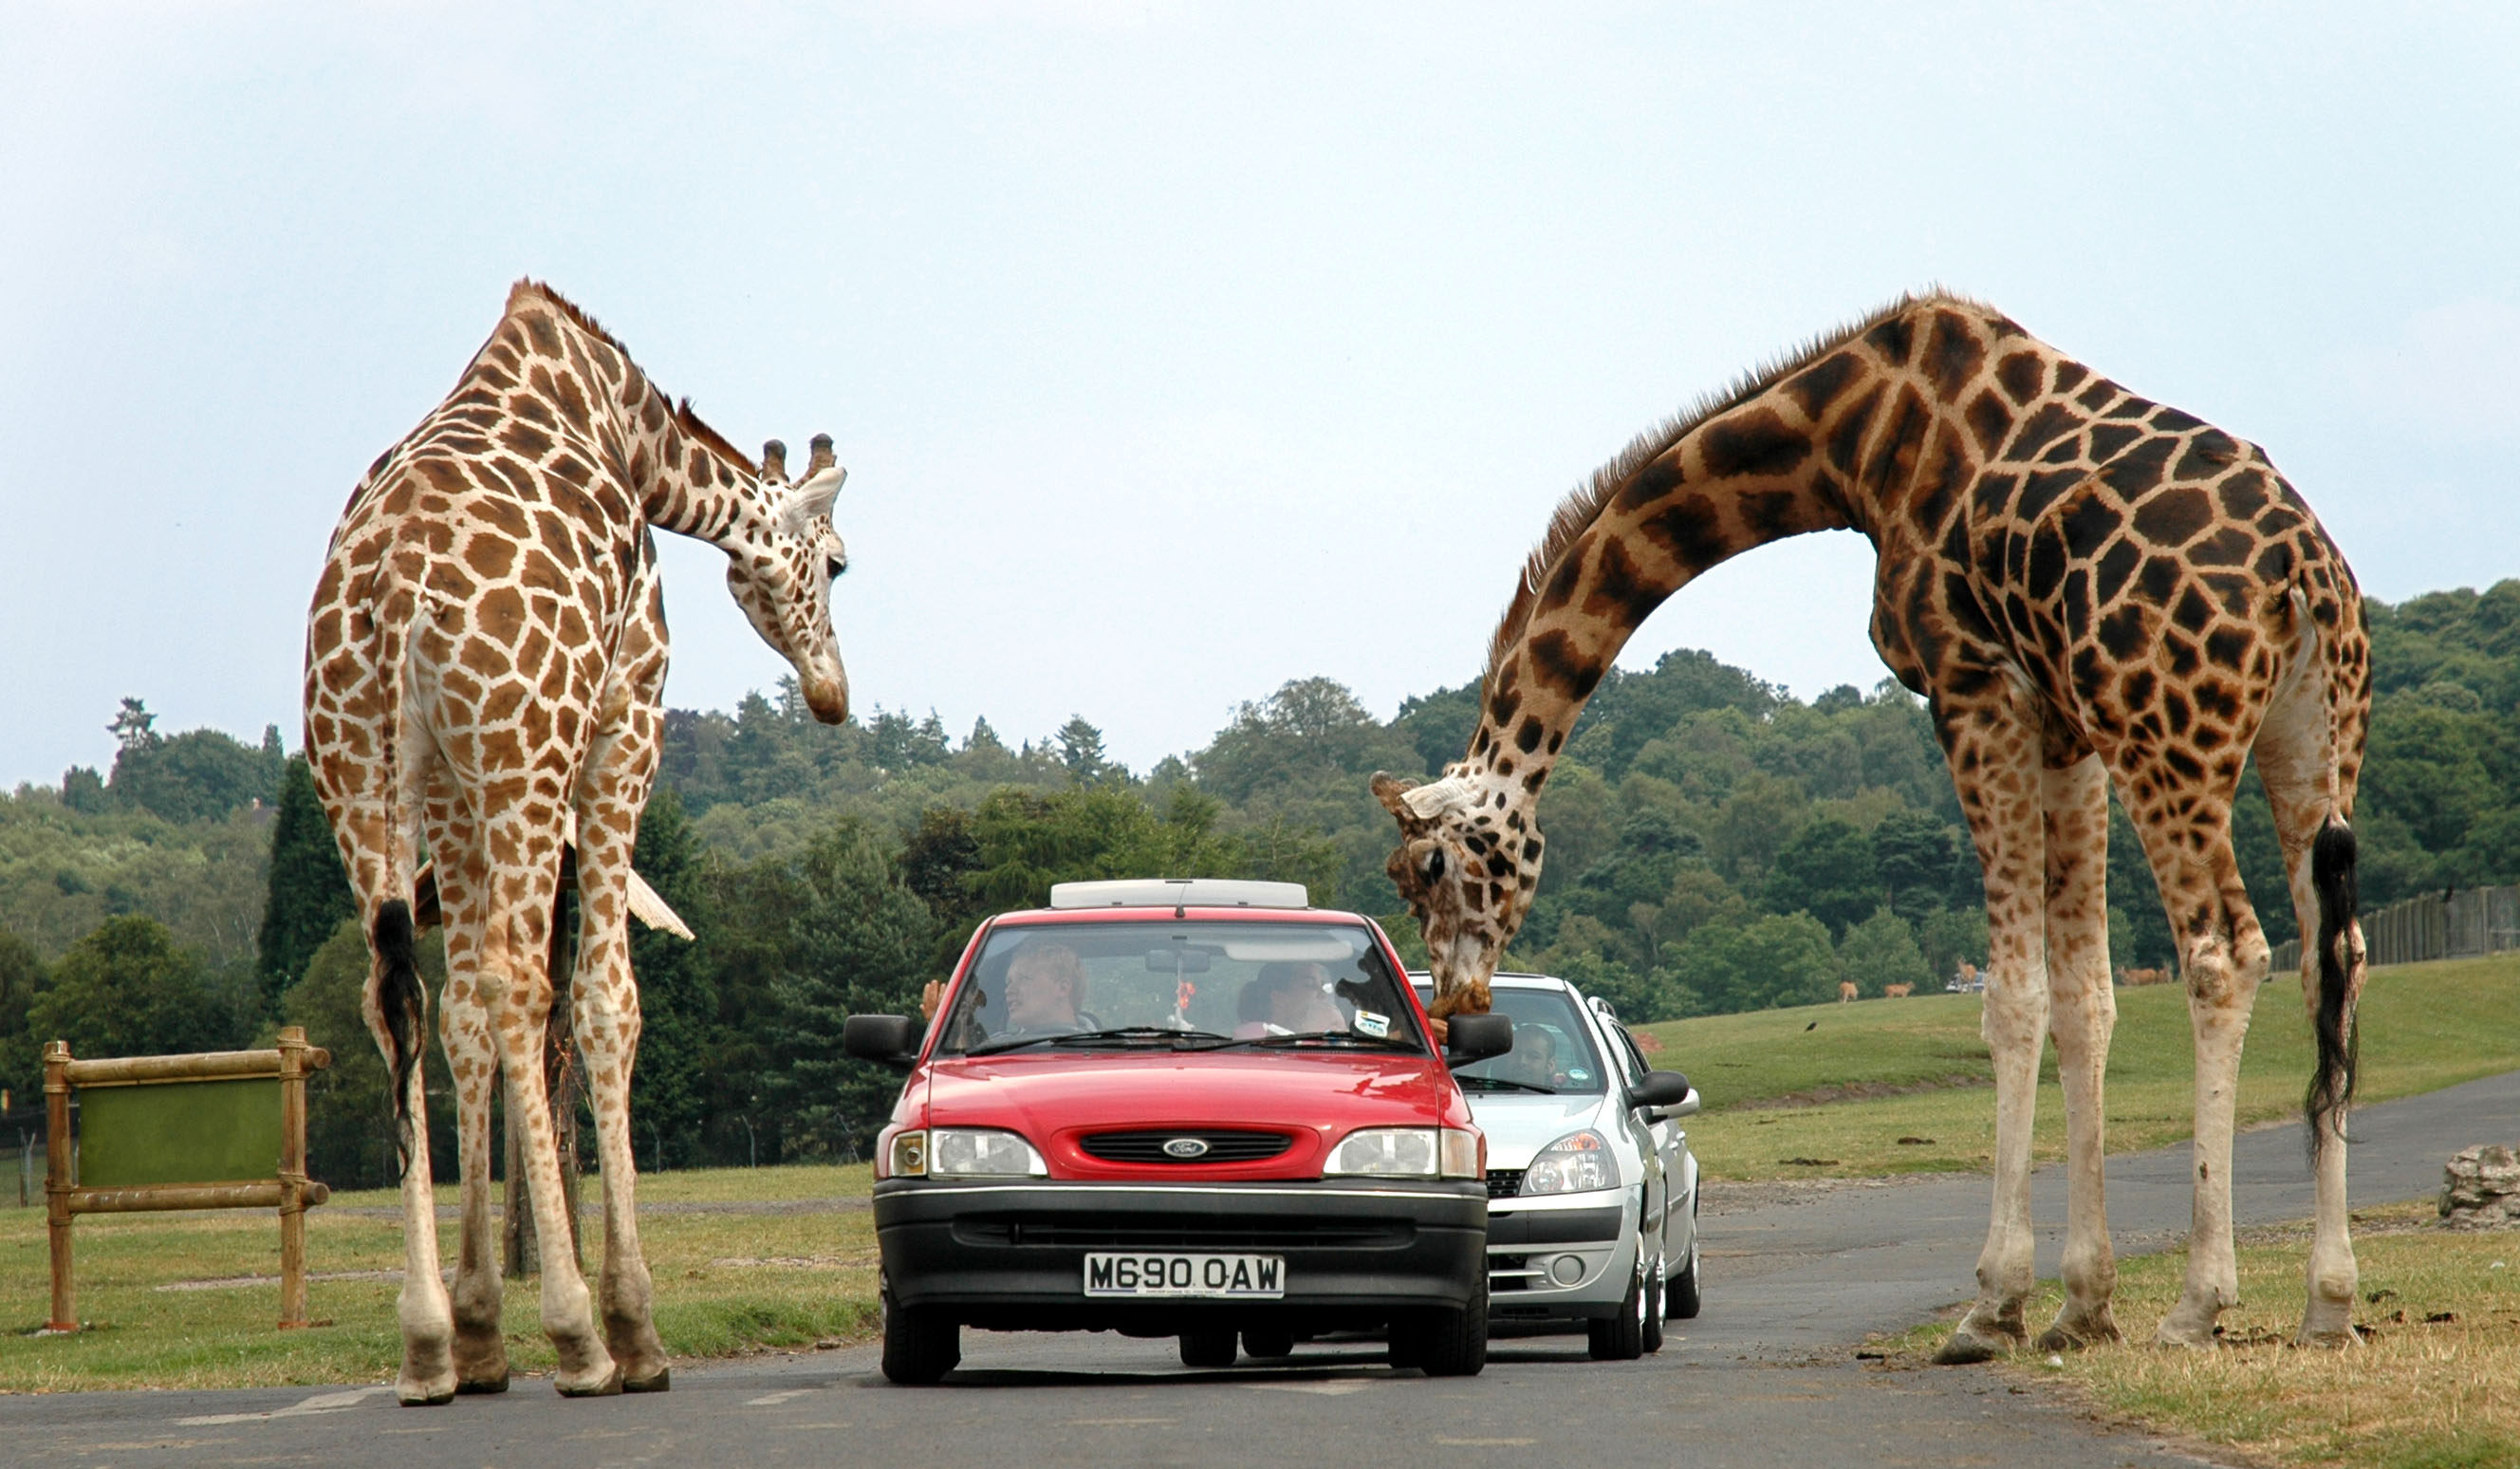 Развлечение в мире животных. Safari Park West Midlands. Сафари парк Дубай. Жираф и человек. Фото жирафа.